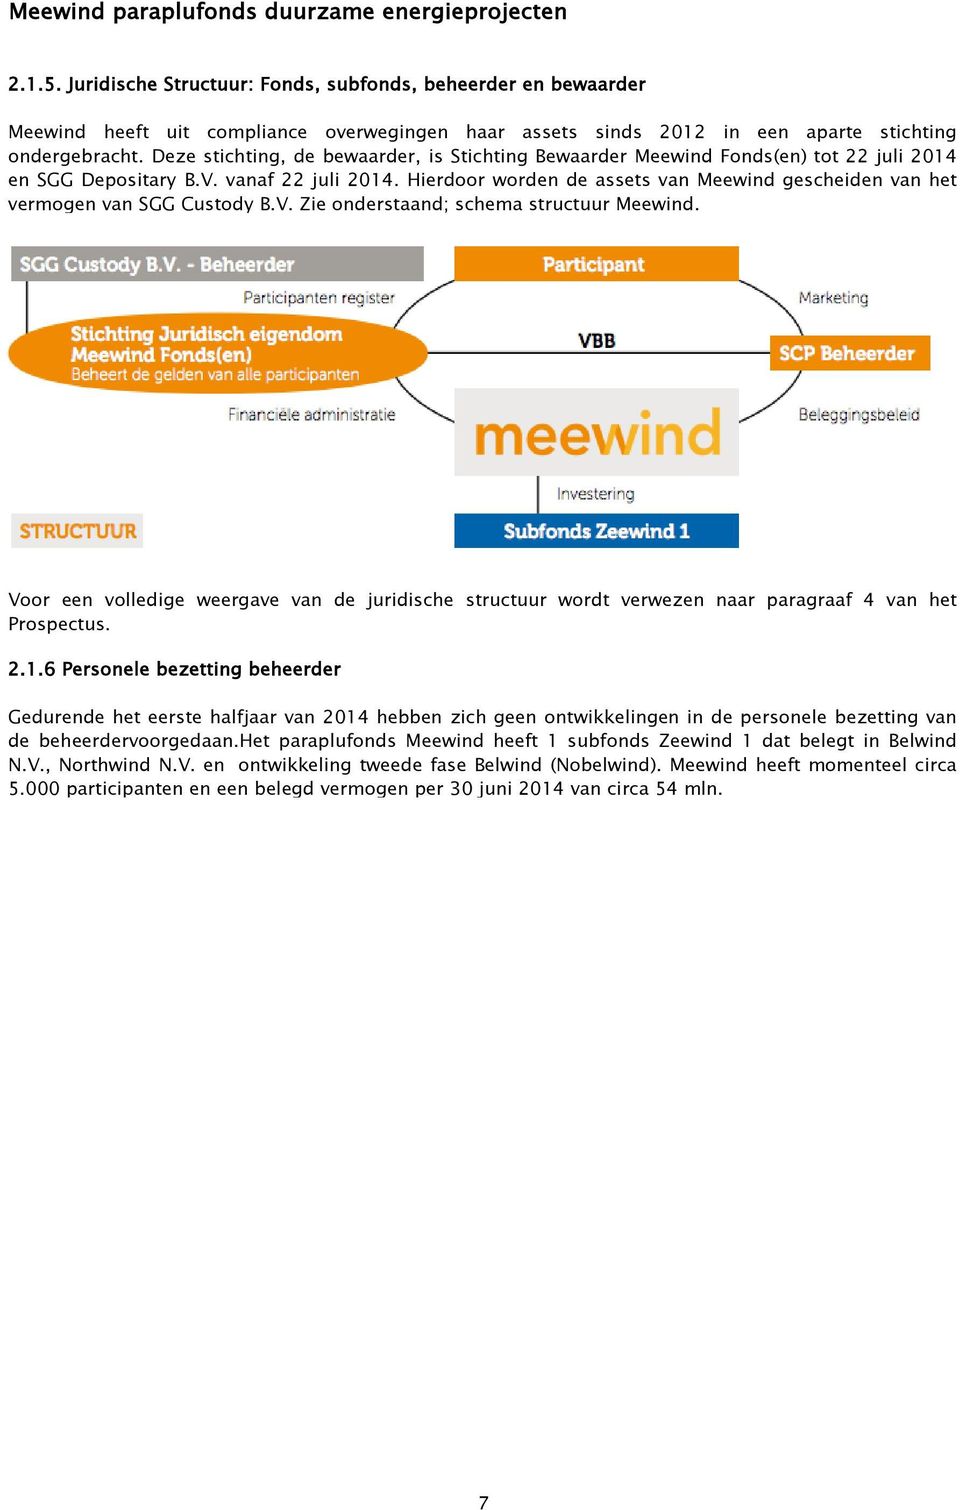 Hierdoor worden de assets van Meewind gescheiden van het vermogen van SGG Custody B.V. Zie onderstaand; schema structuur Meewind.